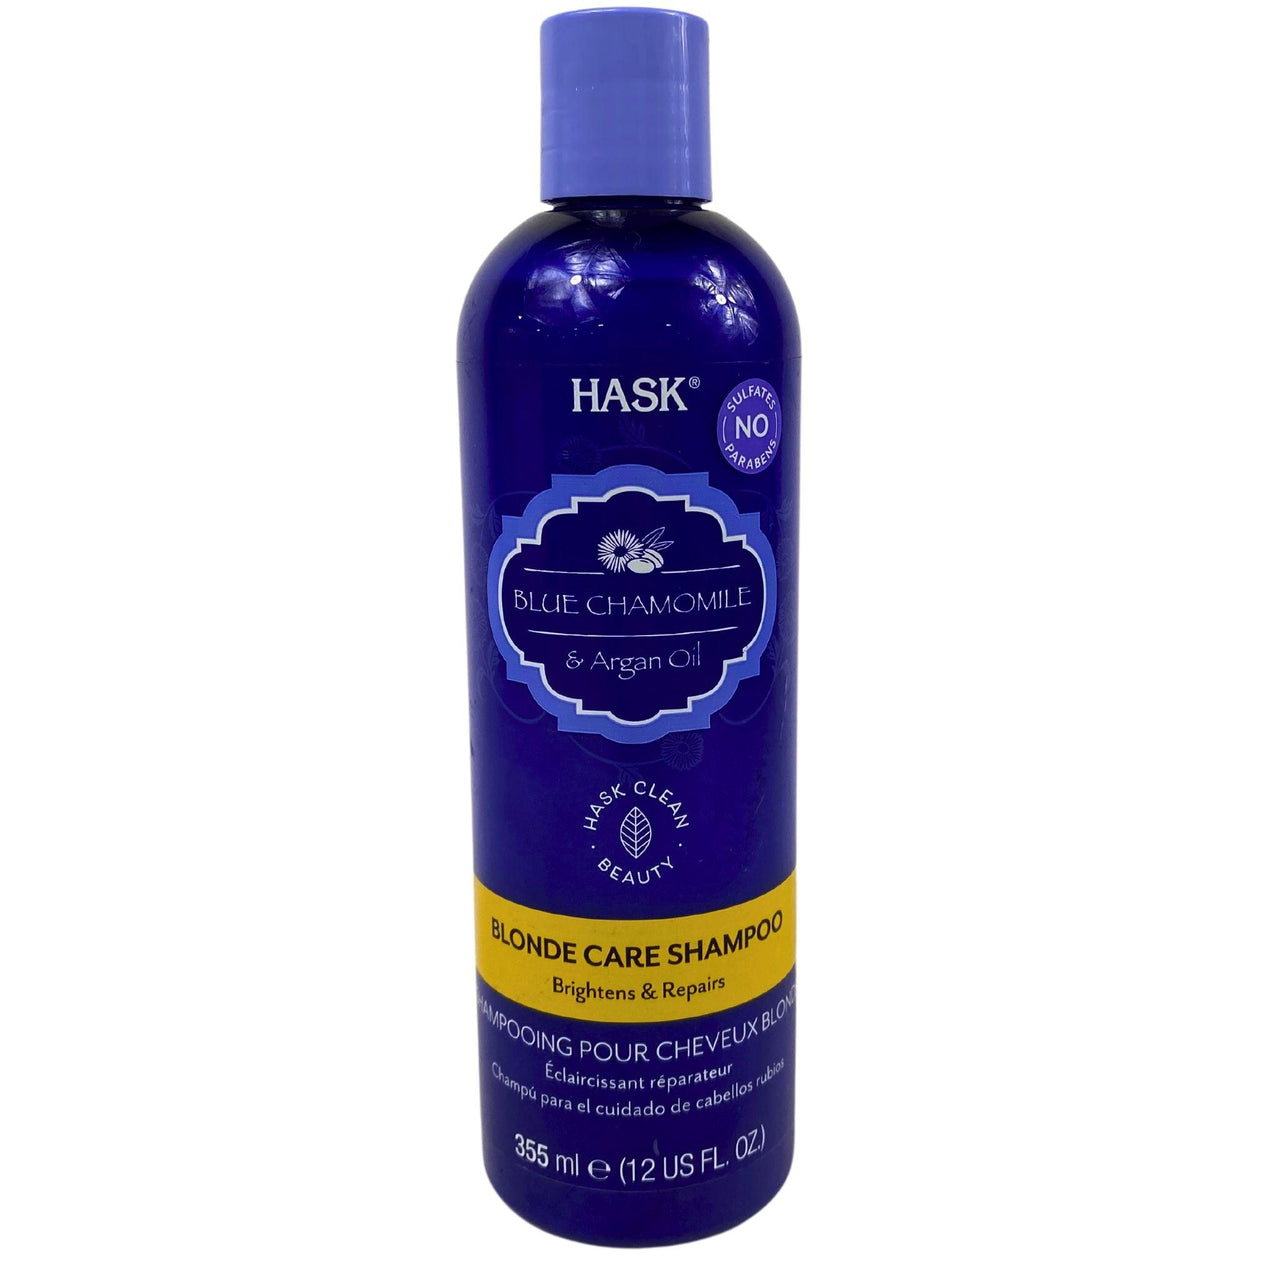 HASK Blue Chamomile & Argan Oil Blonde Care Shampoo 12OZ (50 Pcs Lot) - Discount Wholesalers Inc